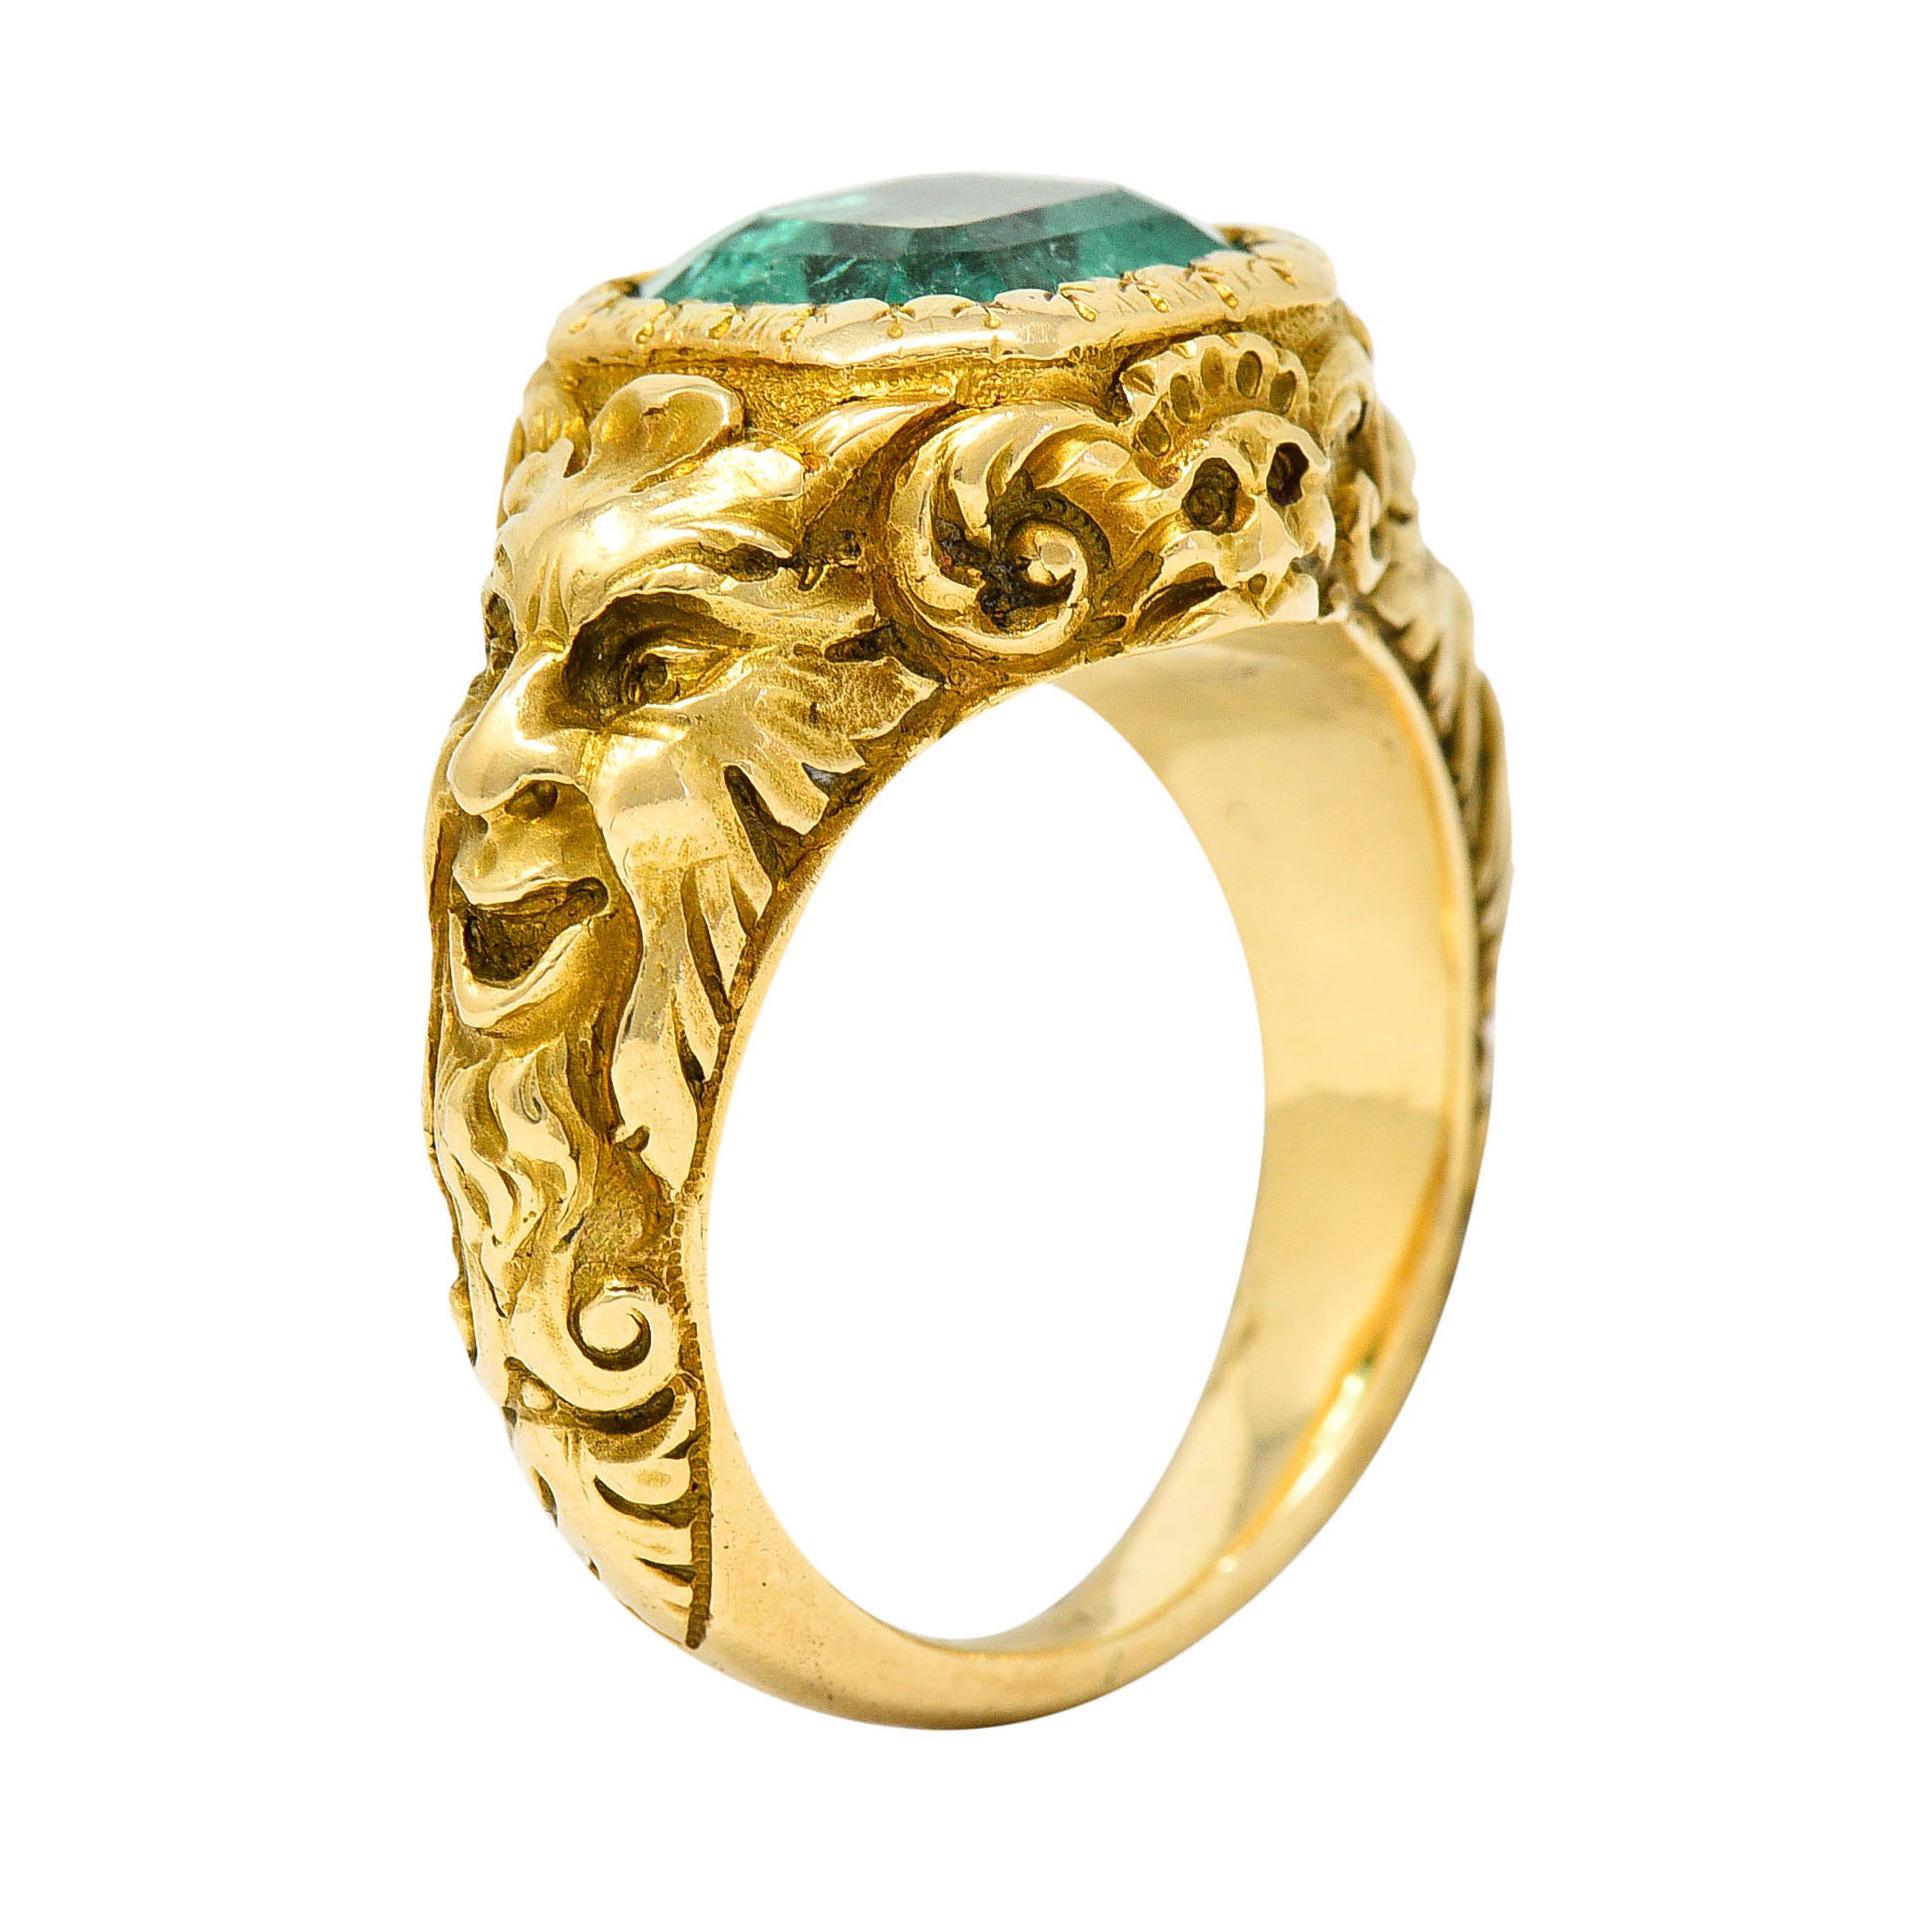 Exceptional Art Nouveau Emerald 18 Karat Gold Green Man Signet Ring